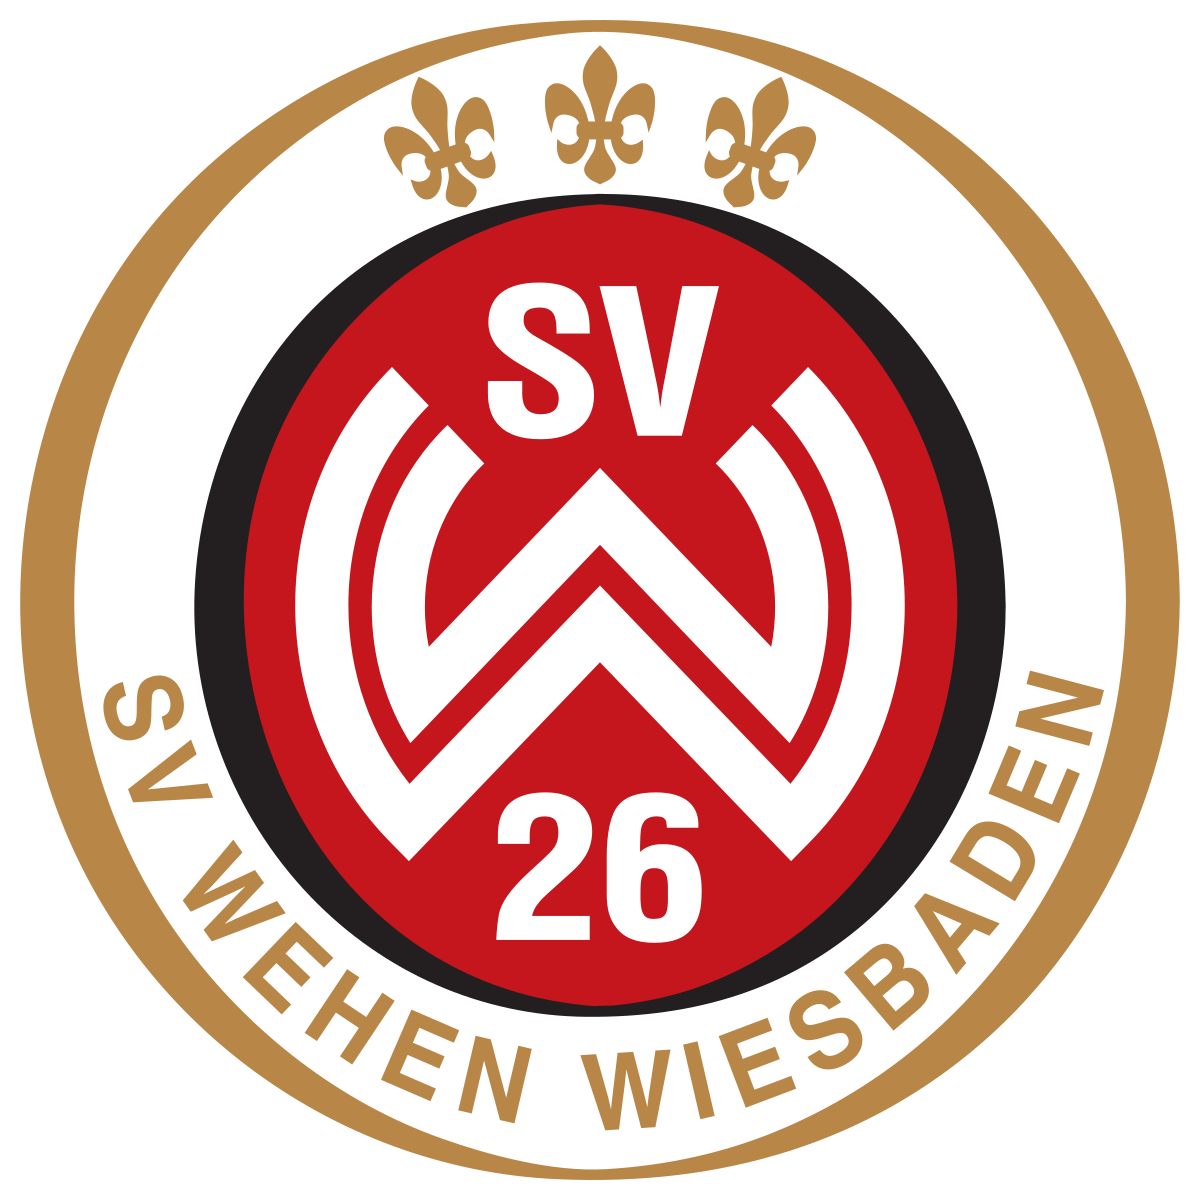 韋恩威斯巴登 logo